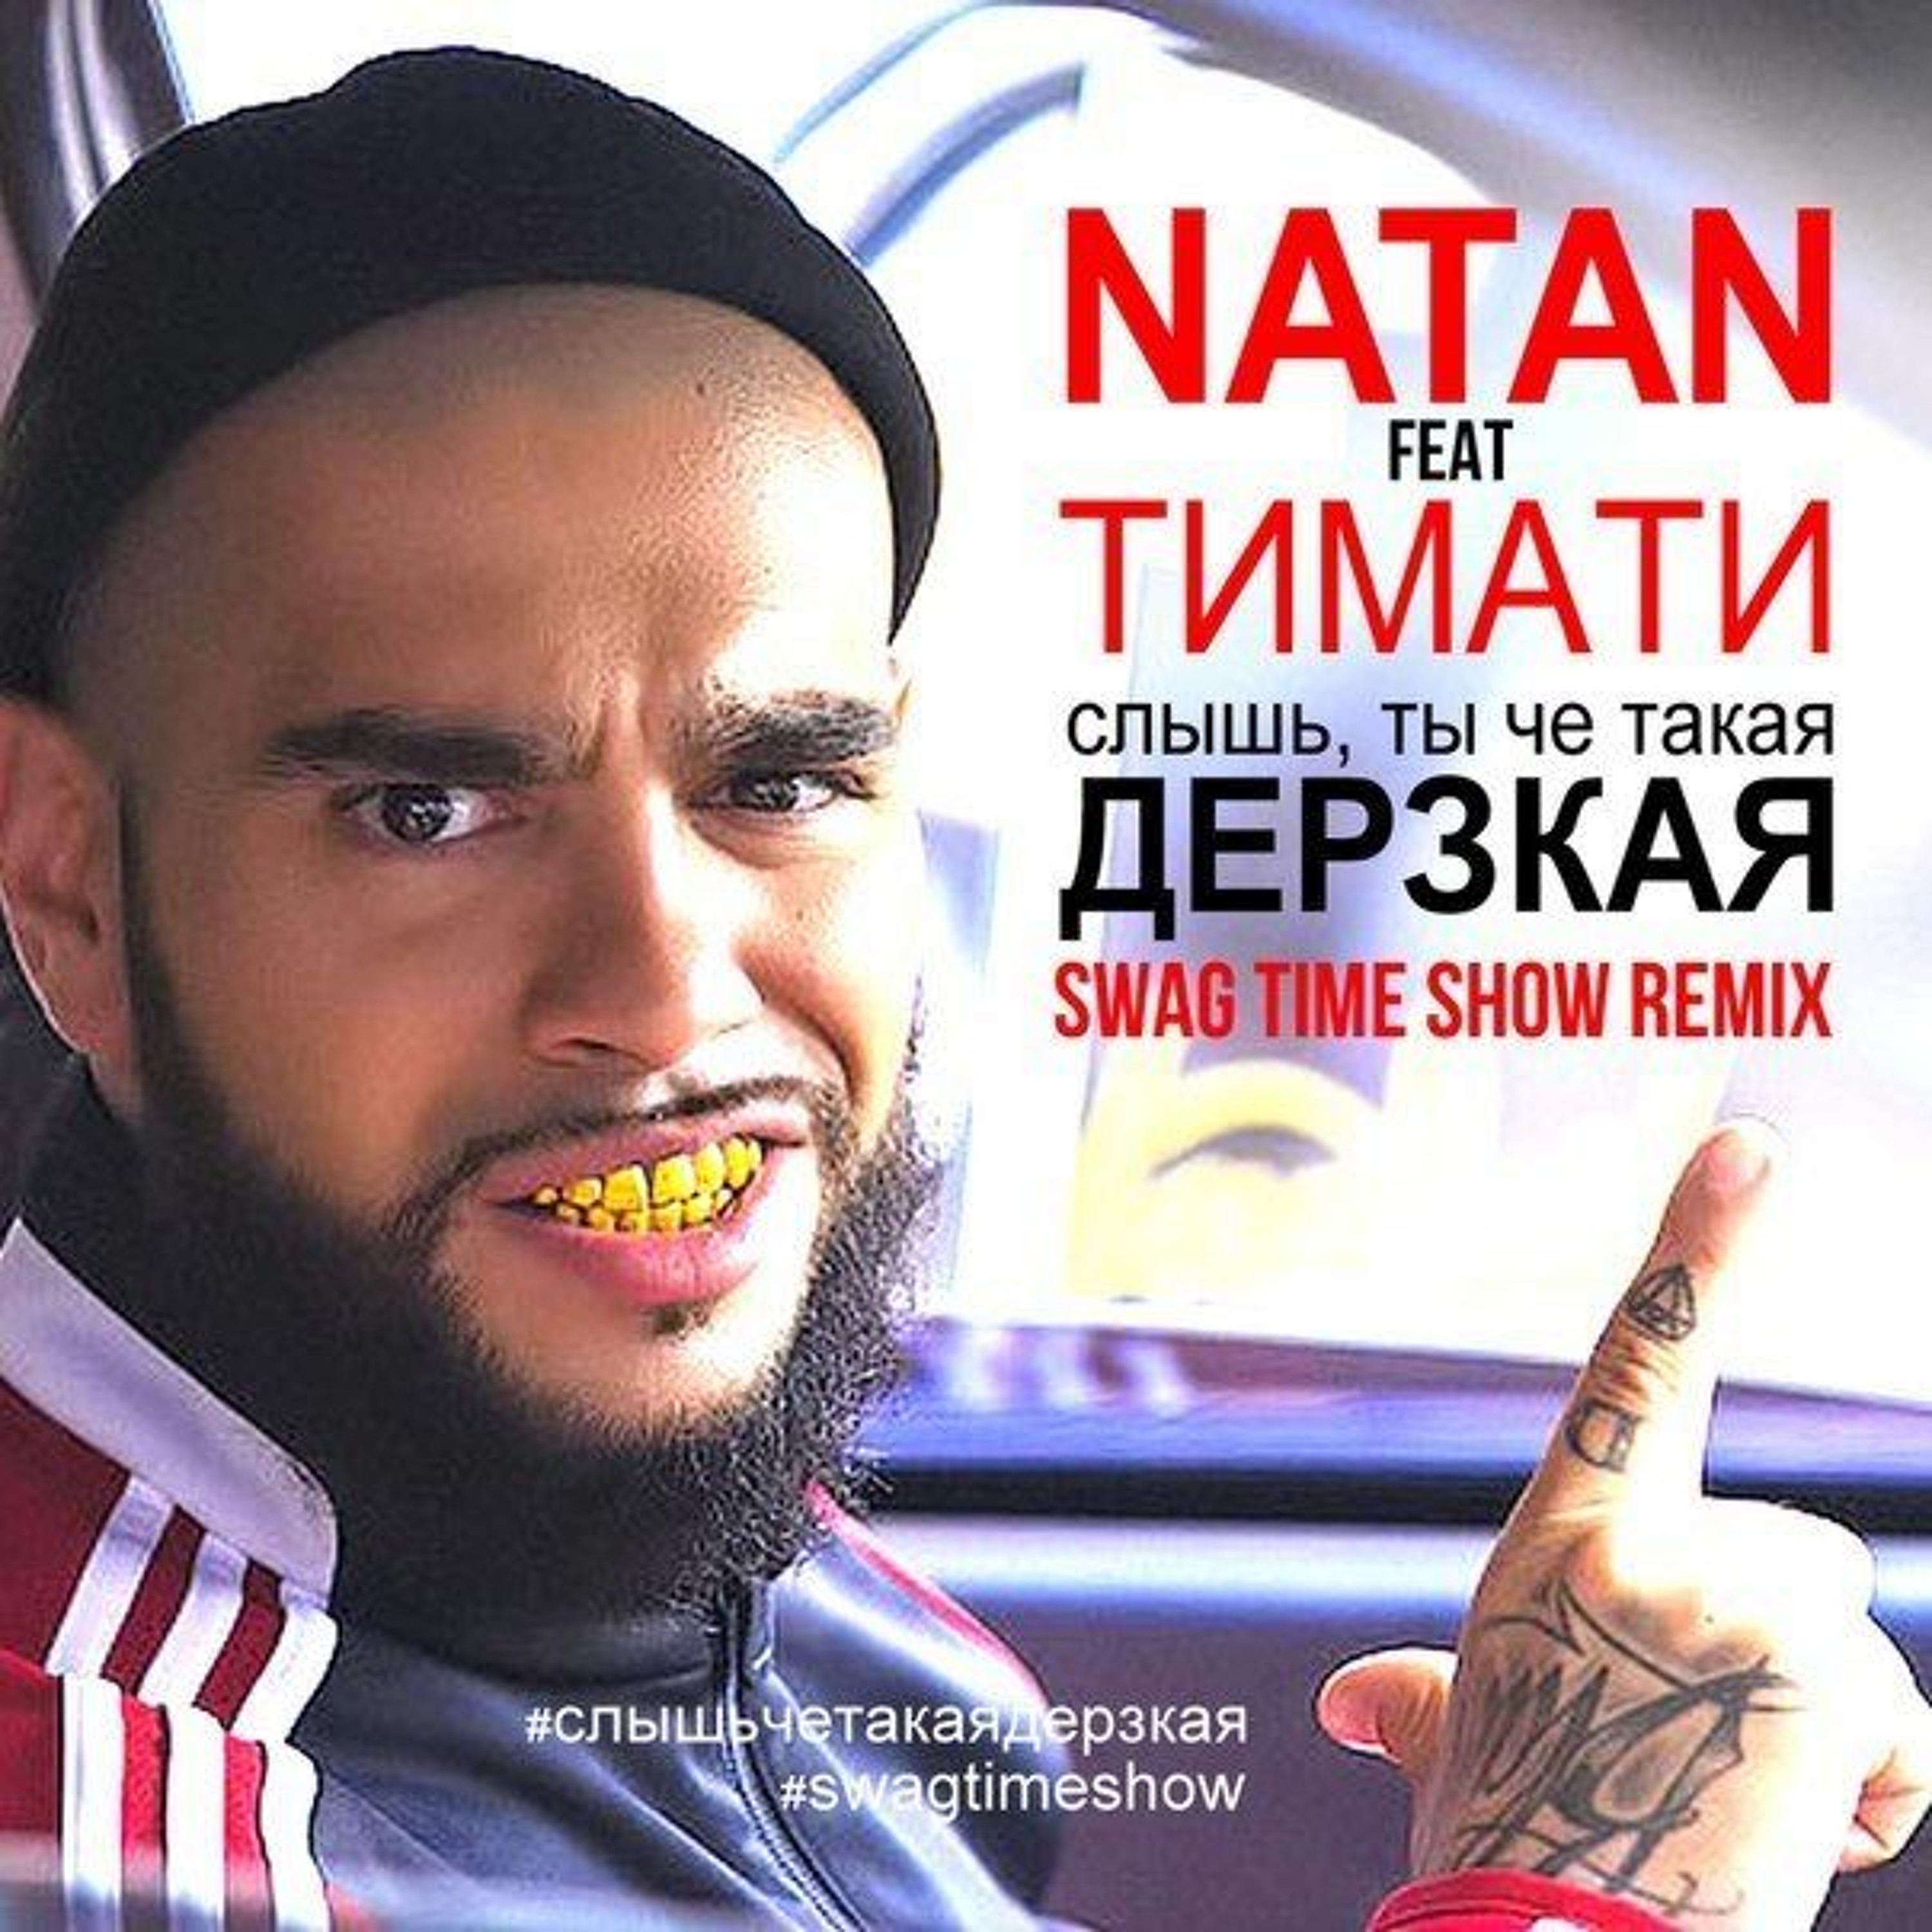 Дерзкий mp3. Timati ft Natan. Дерзкая. Тимати. Natan feat. Тимати - дерзкая.